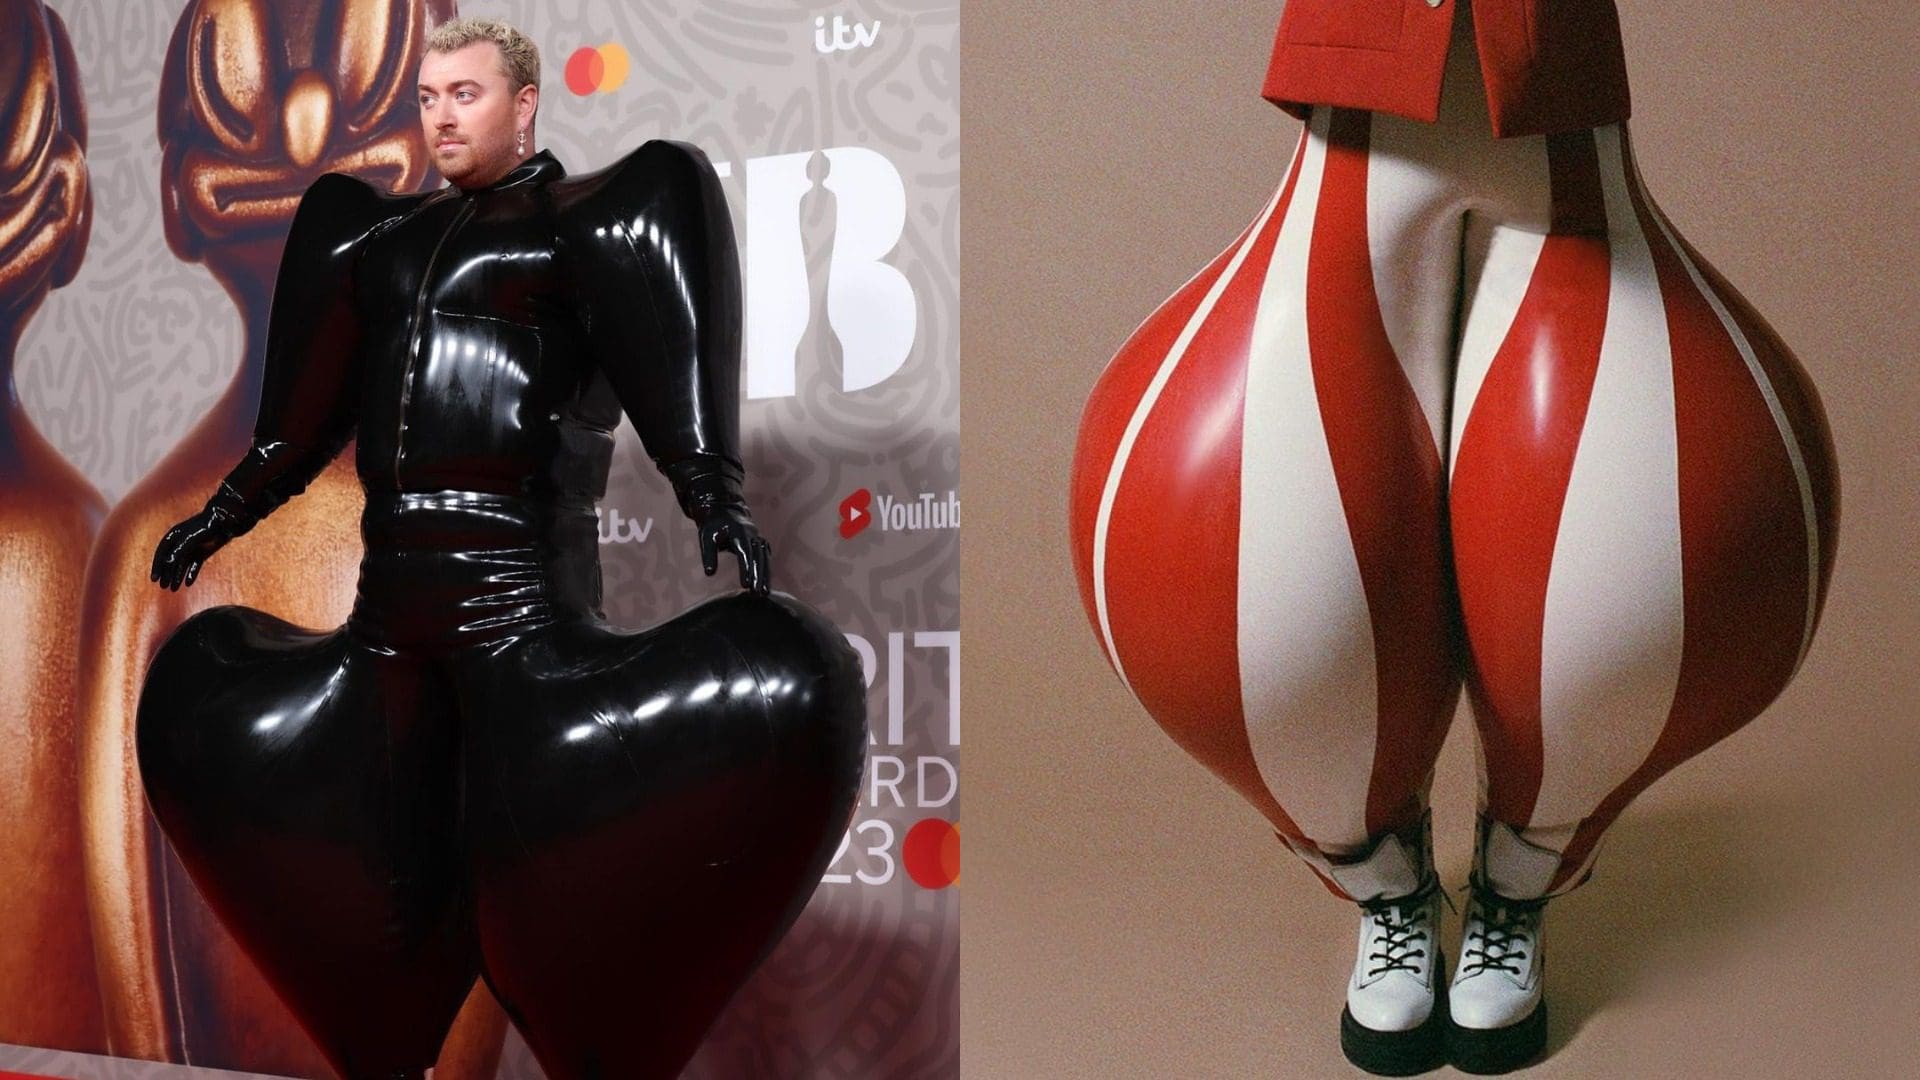 Sam Smith 爭議性時尚再+1！超怪異「黑色氣球裝」來自超現實時裝品牌「Harri」！